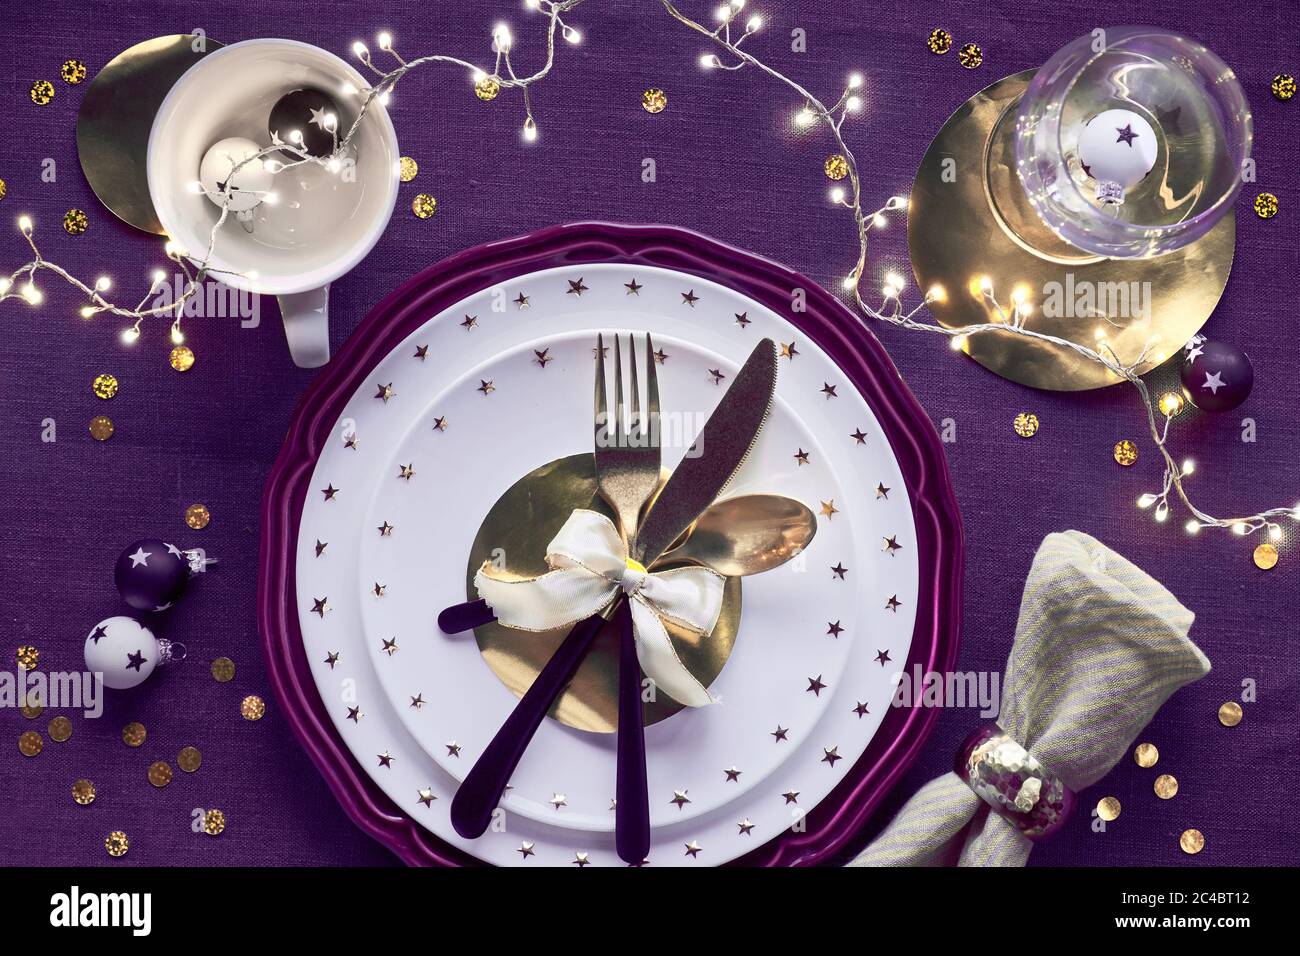 Tavolo natalizio con piatto bianco e utensili dorati e decorazioni dorate su un panno viola profondo. Disposizione piatta, vista dall'alto su biancheria viola scura Foto Stock